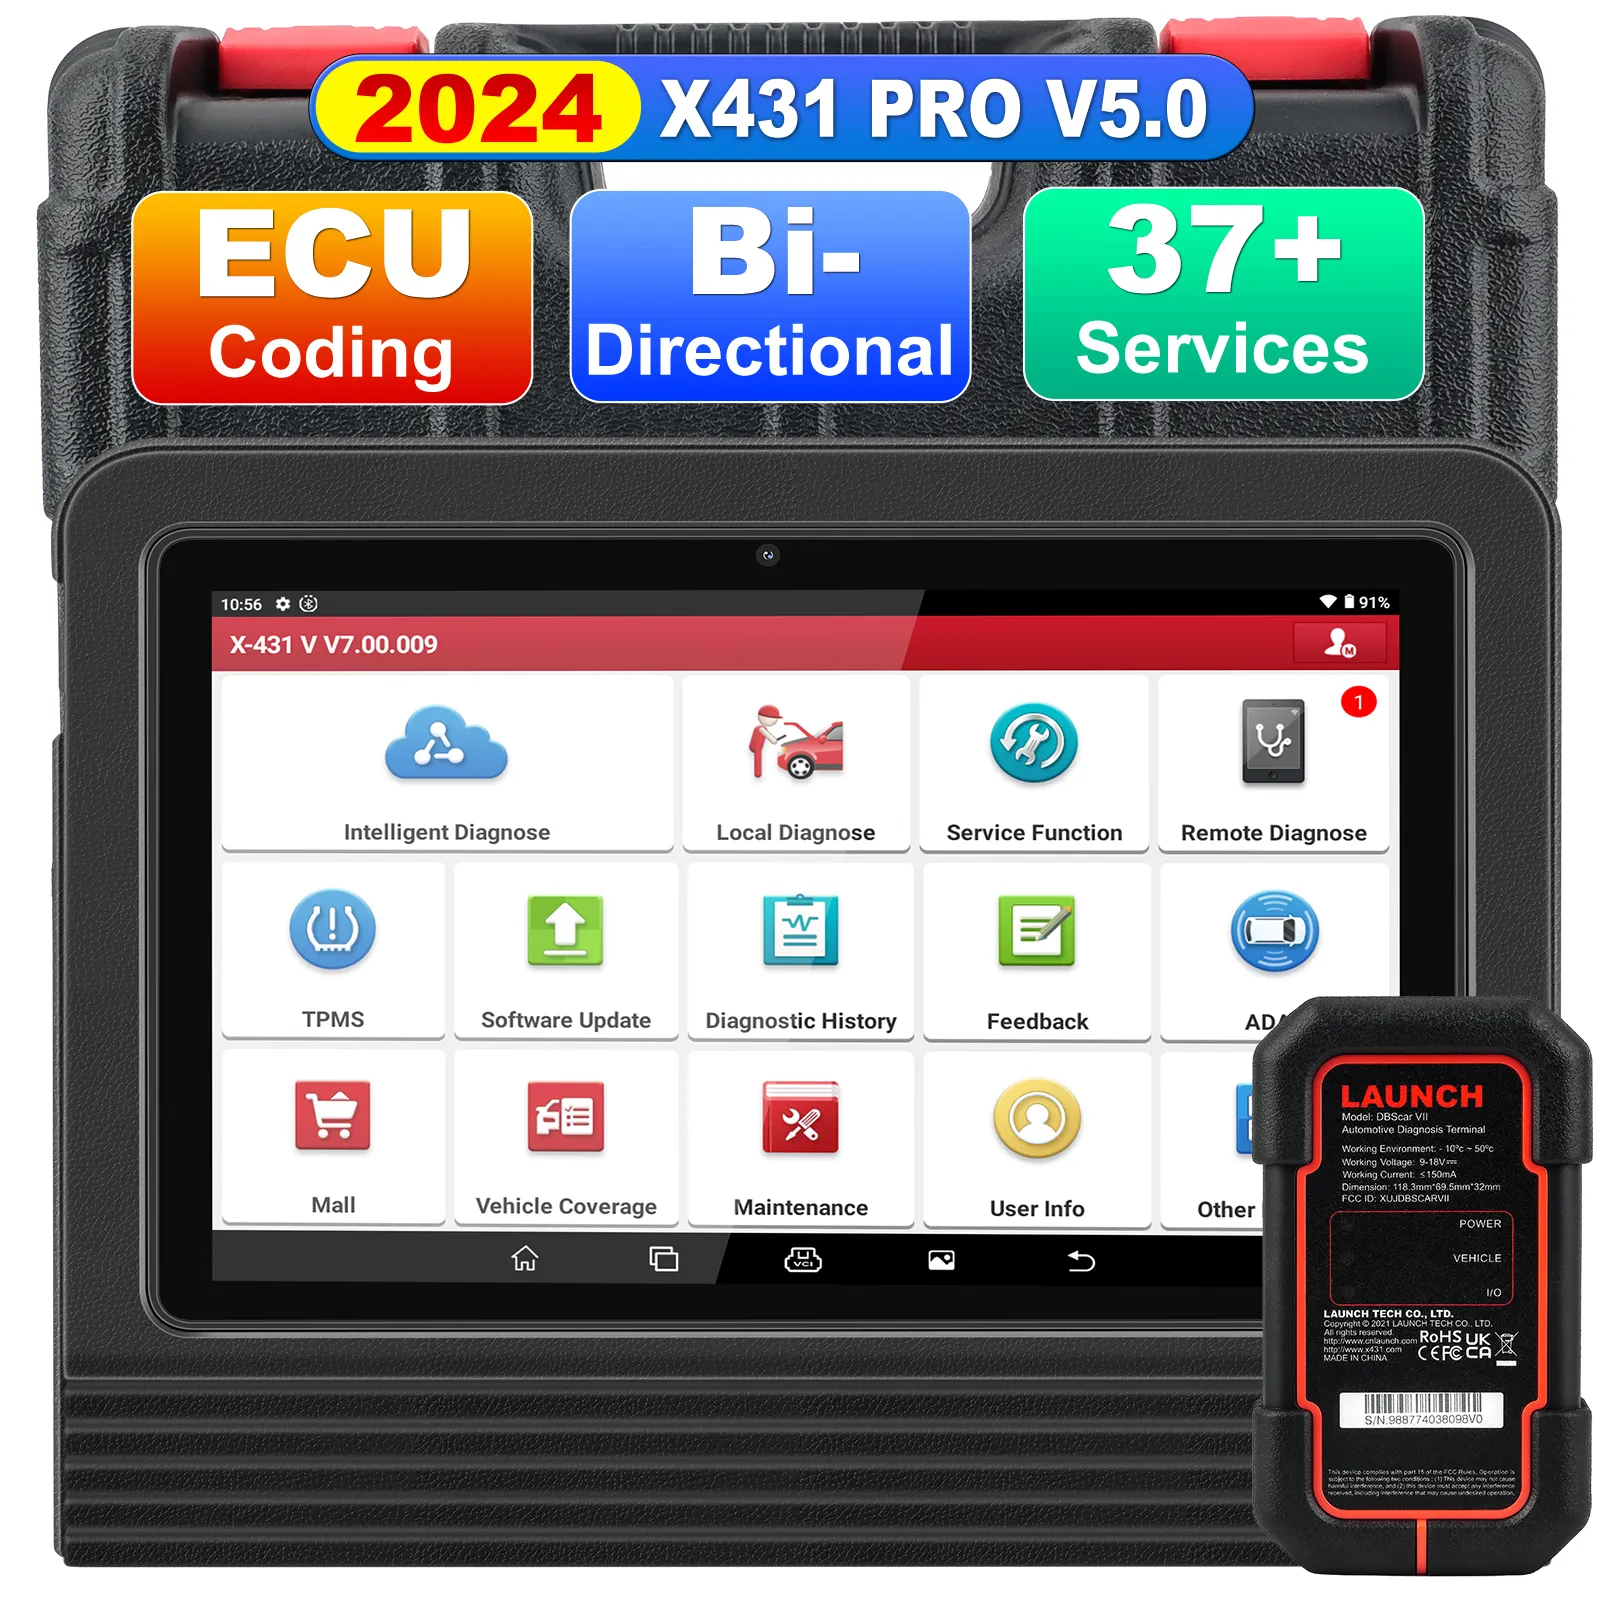 Nova versão X-431 PRO V 5.0 ferramenta de diagnóstico de carros bidirecional, atualização gratuita de 2 anos, scanner online obd2 com suporte para wi-fi/bt